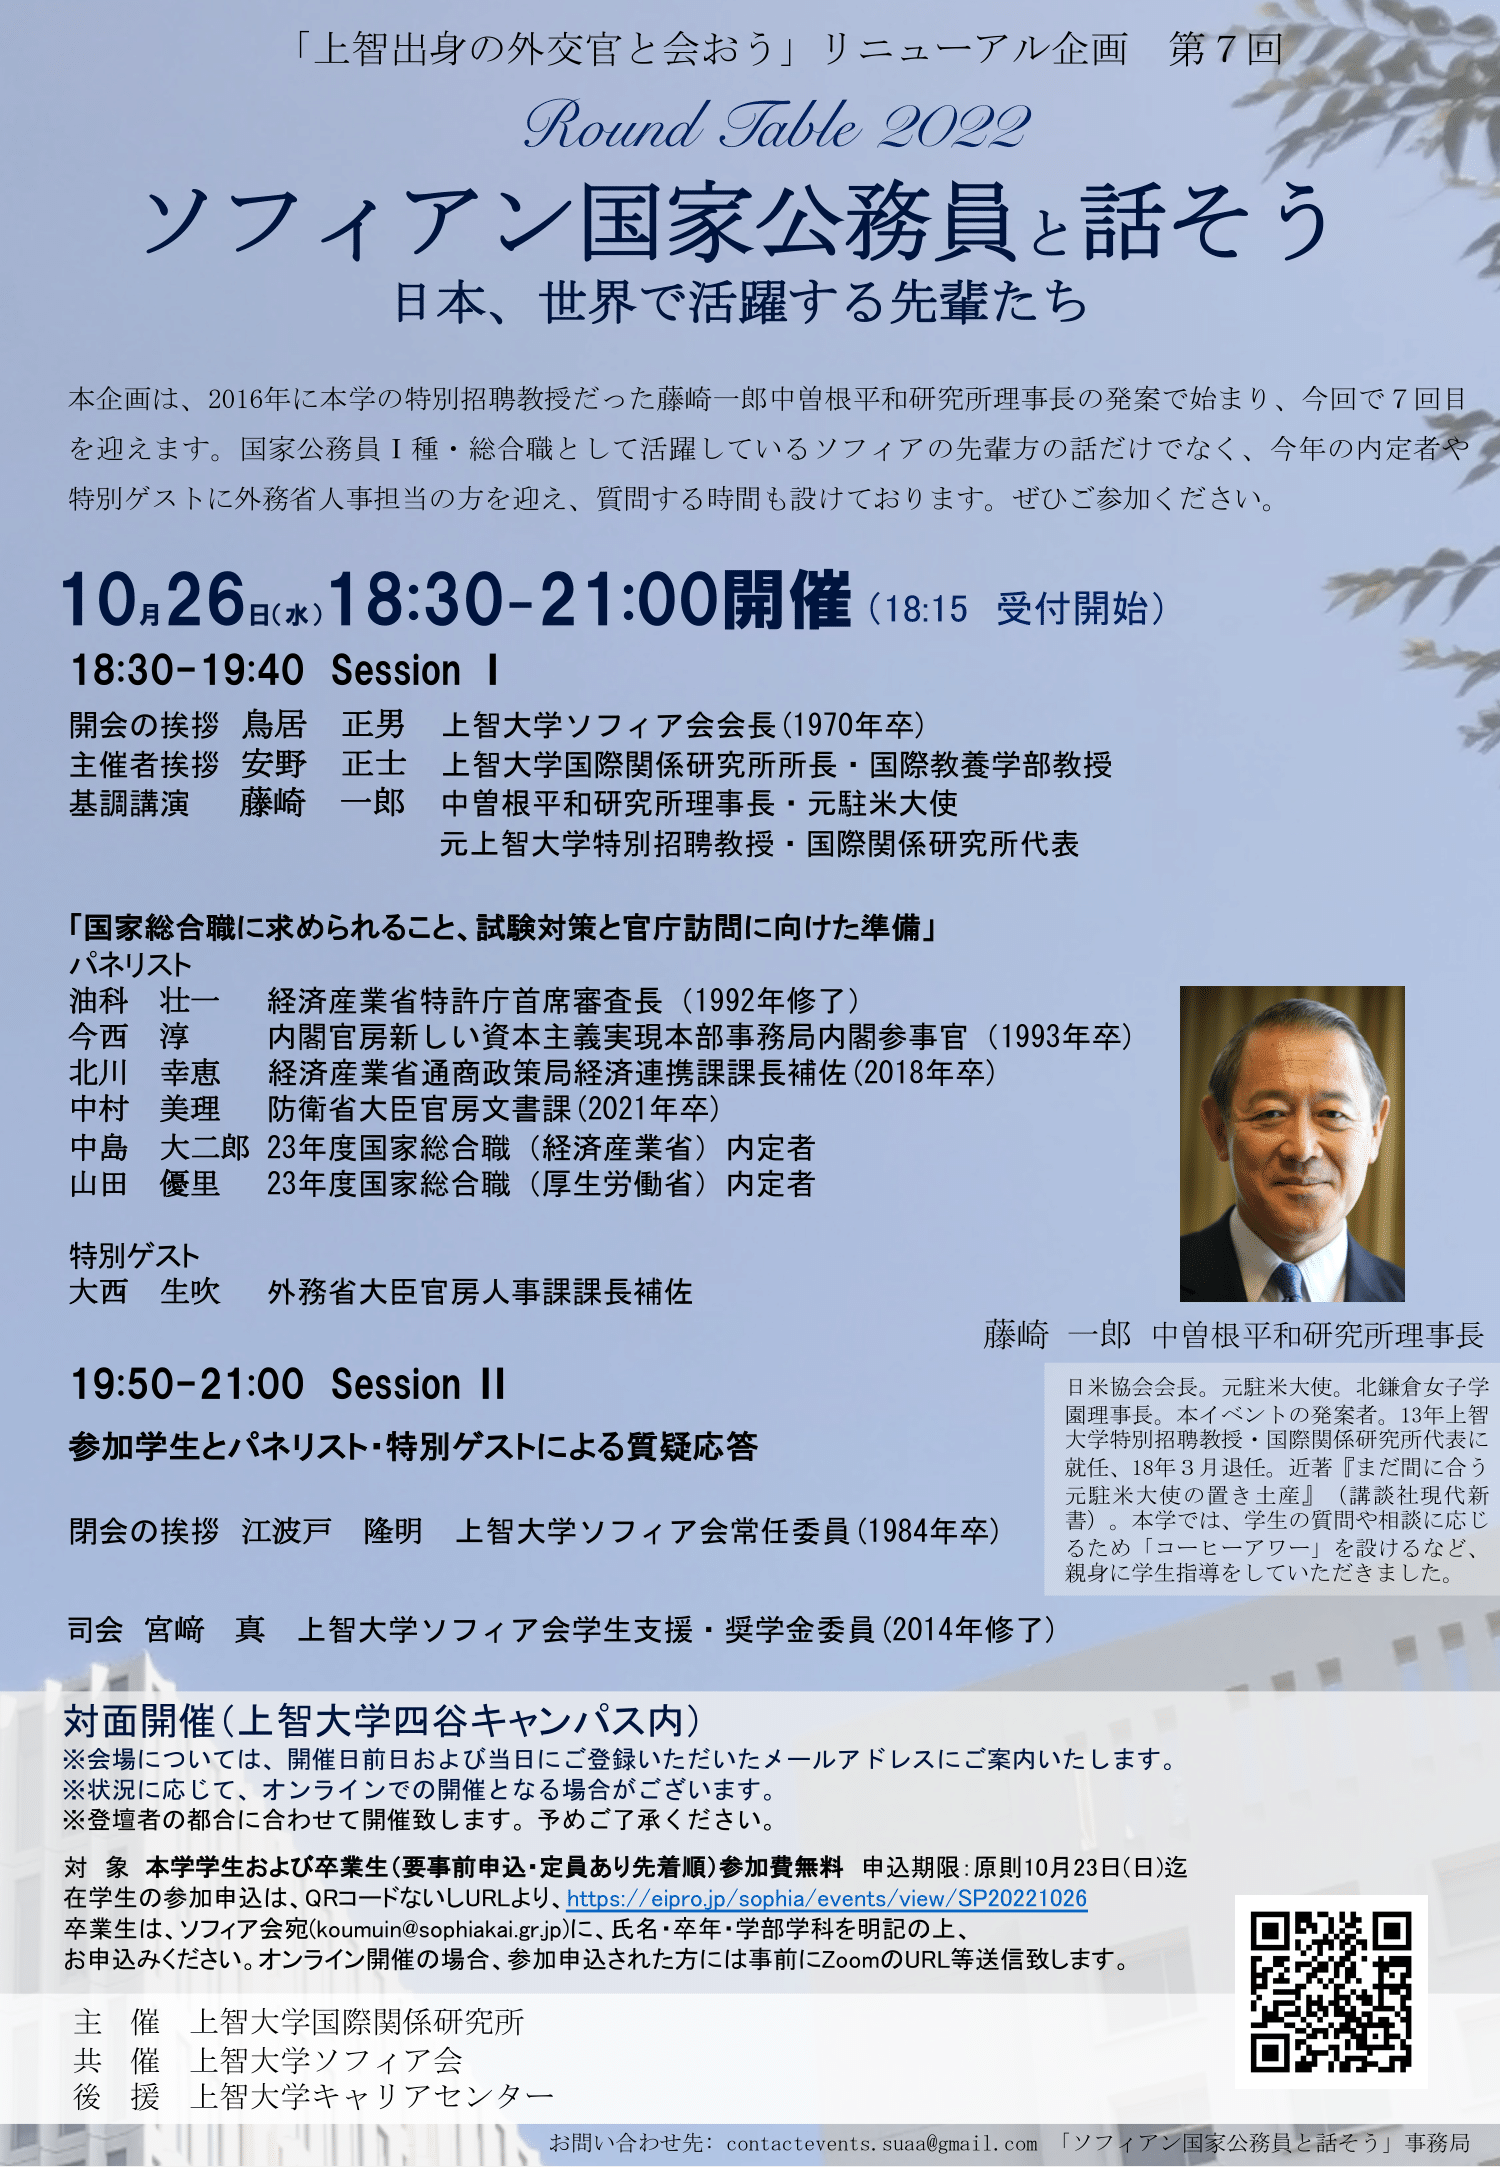 国際関係研究所主催ラウンドテーブル2022「ソフィアン国家公務員と話そう　－日本、世界で活躍する先輩達」を開催します